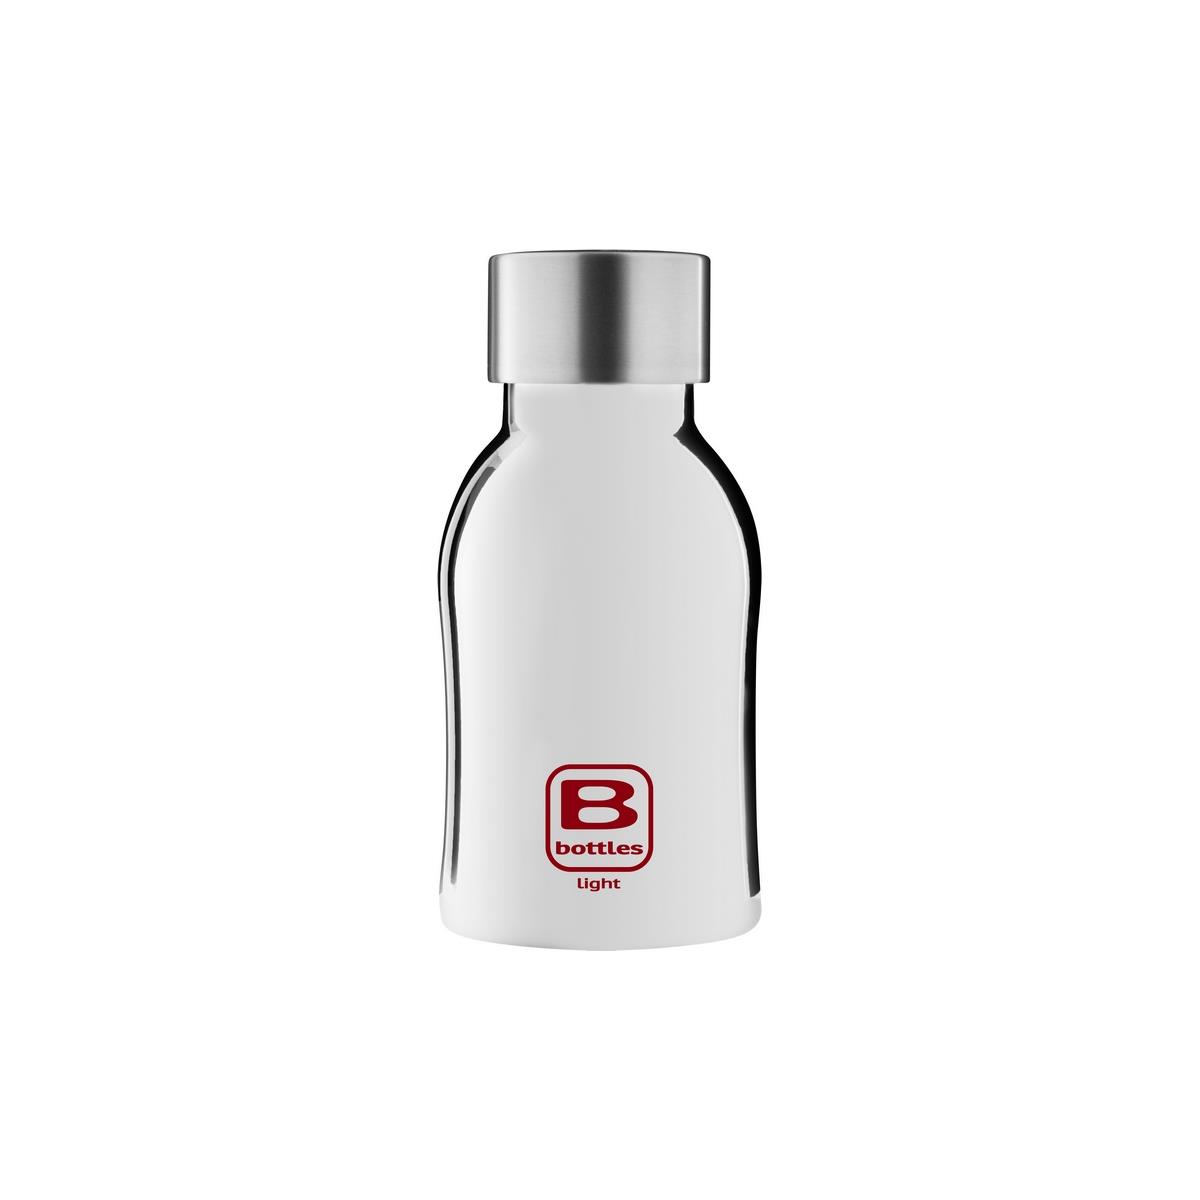 B Bottles Light - Silver Lux - 350 ml - Ultraleichte und kompakte Flasche aus 18/10-Edelstahl